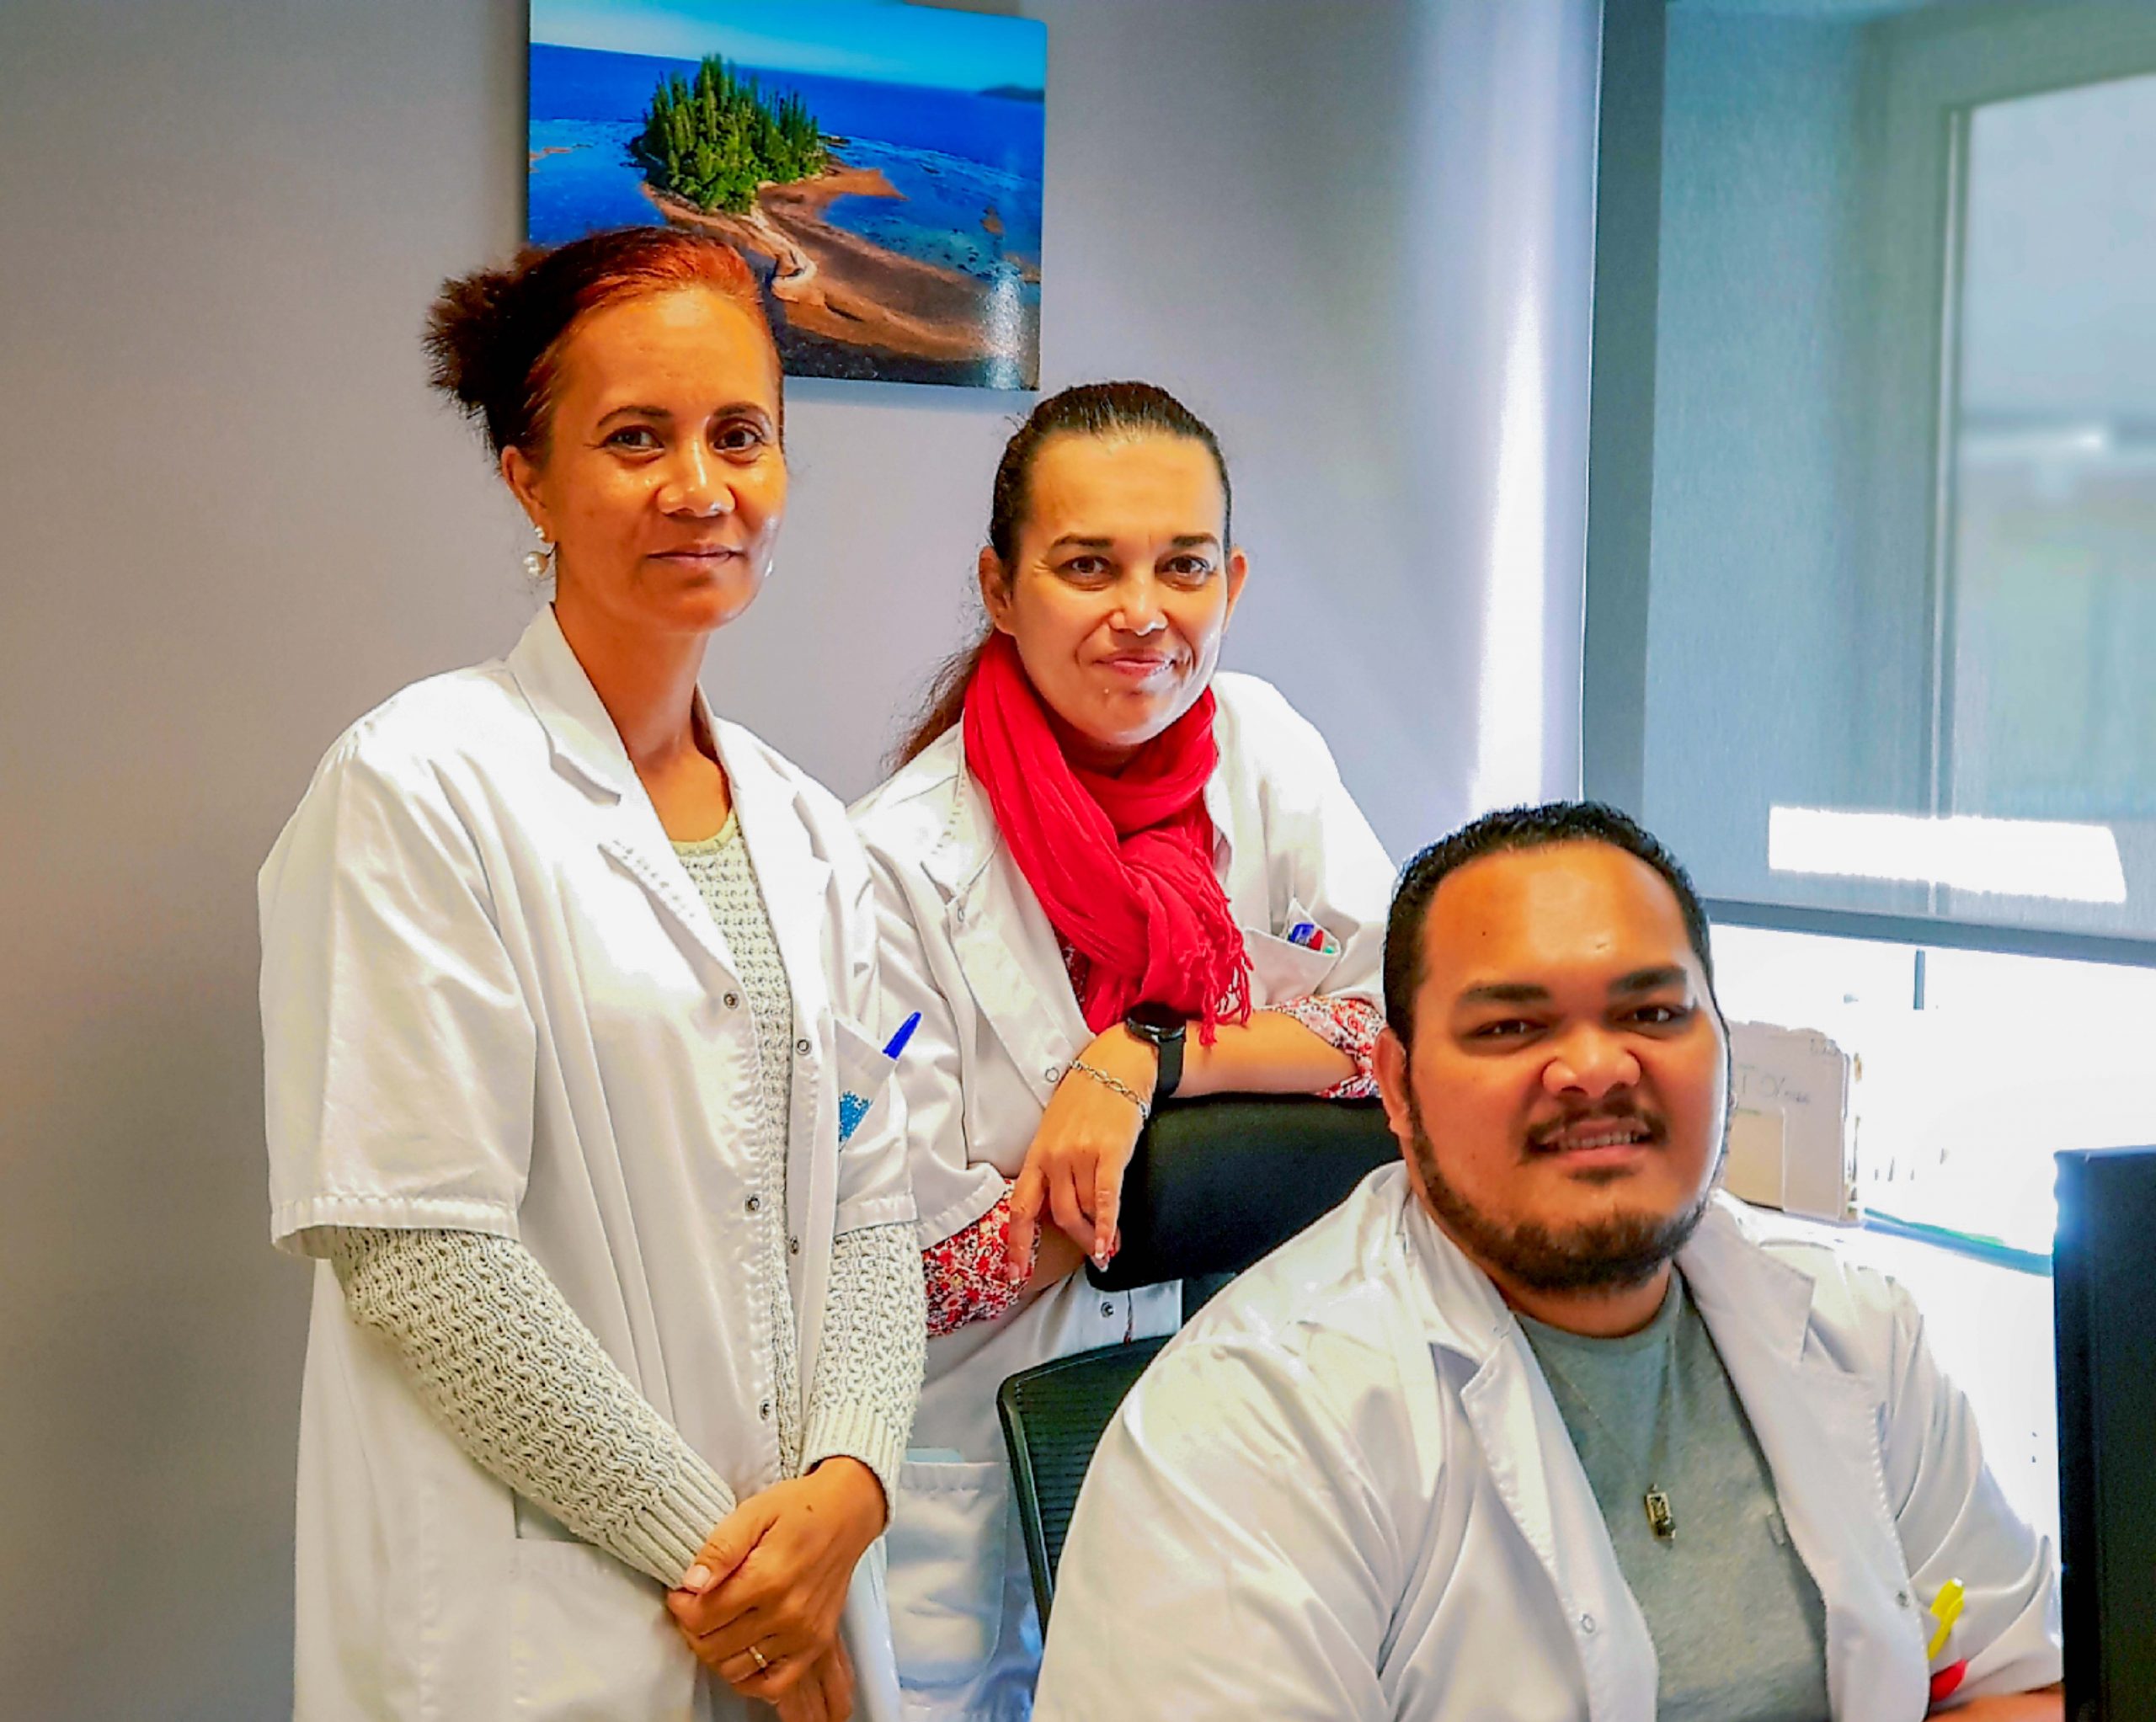 Lorenza, Petelo et Christel, assistants médicaux de l’Atir, assument les fonctions de « relais sociaux » pour les insuffisants rénaux depuis 2021.